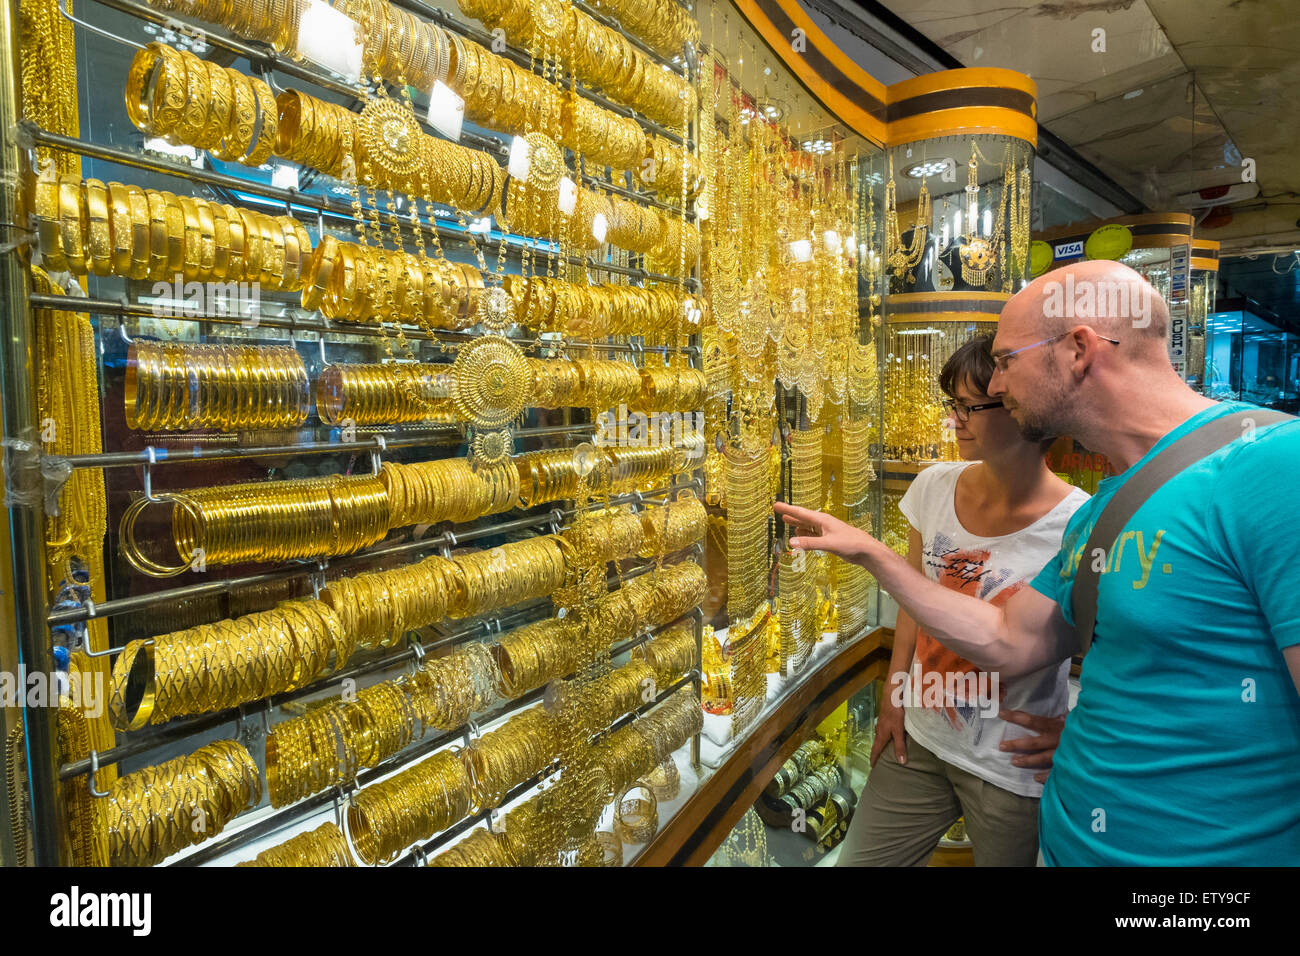 Les touristes à la recherche d'une vitrine de magasin de bijoux d'or orné à l'or à Deira, Dubai Emirats Arabes Unis Banque D'Images